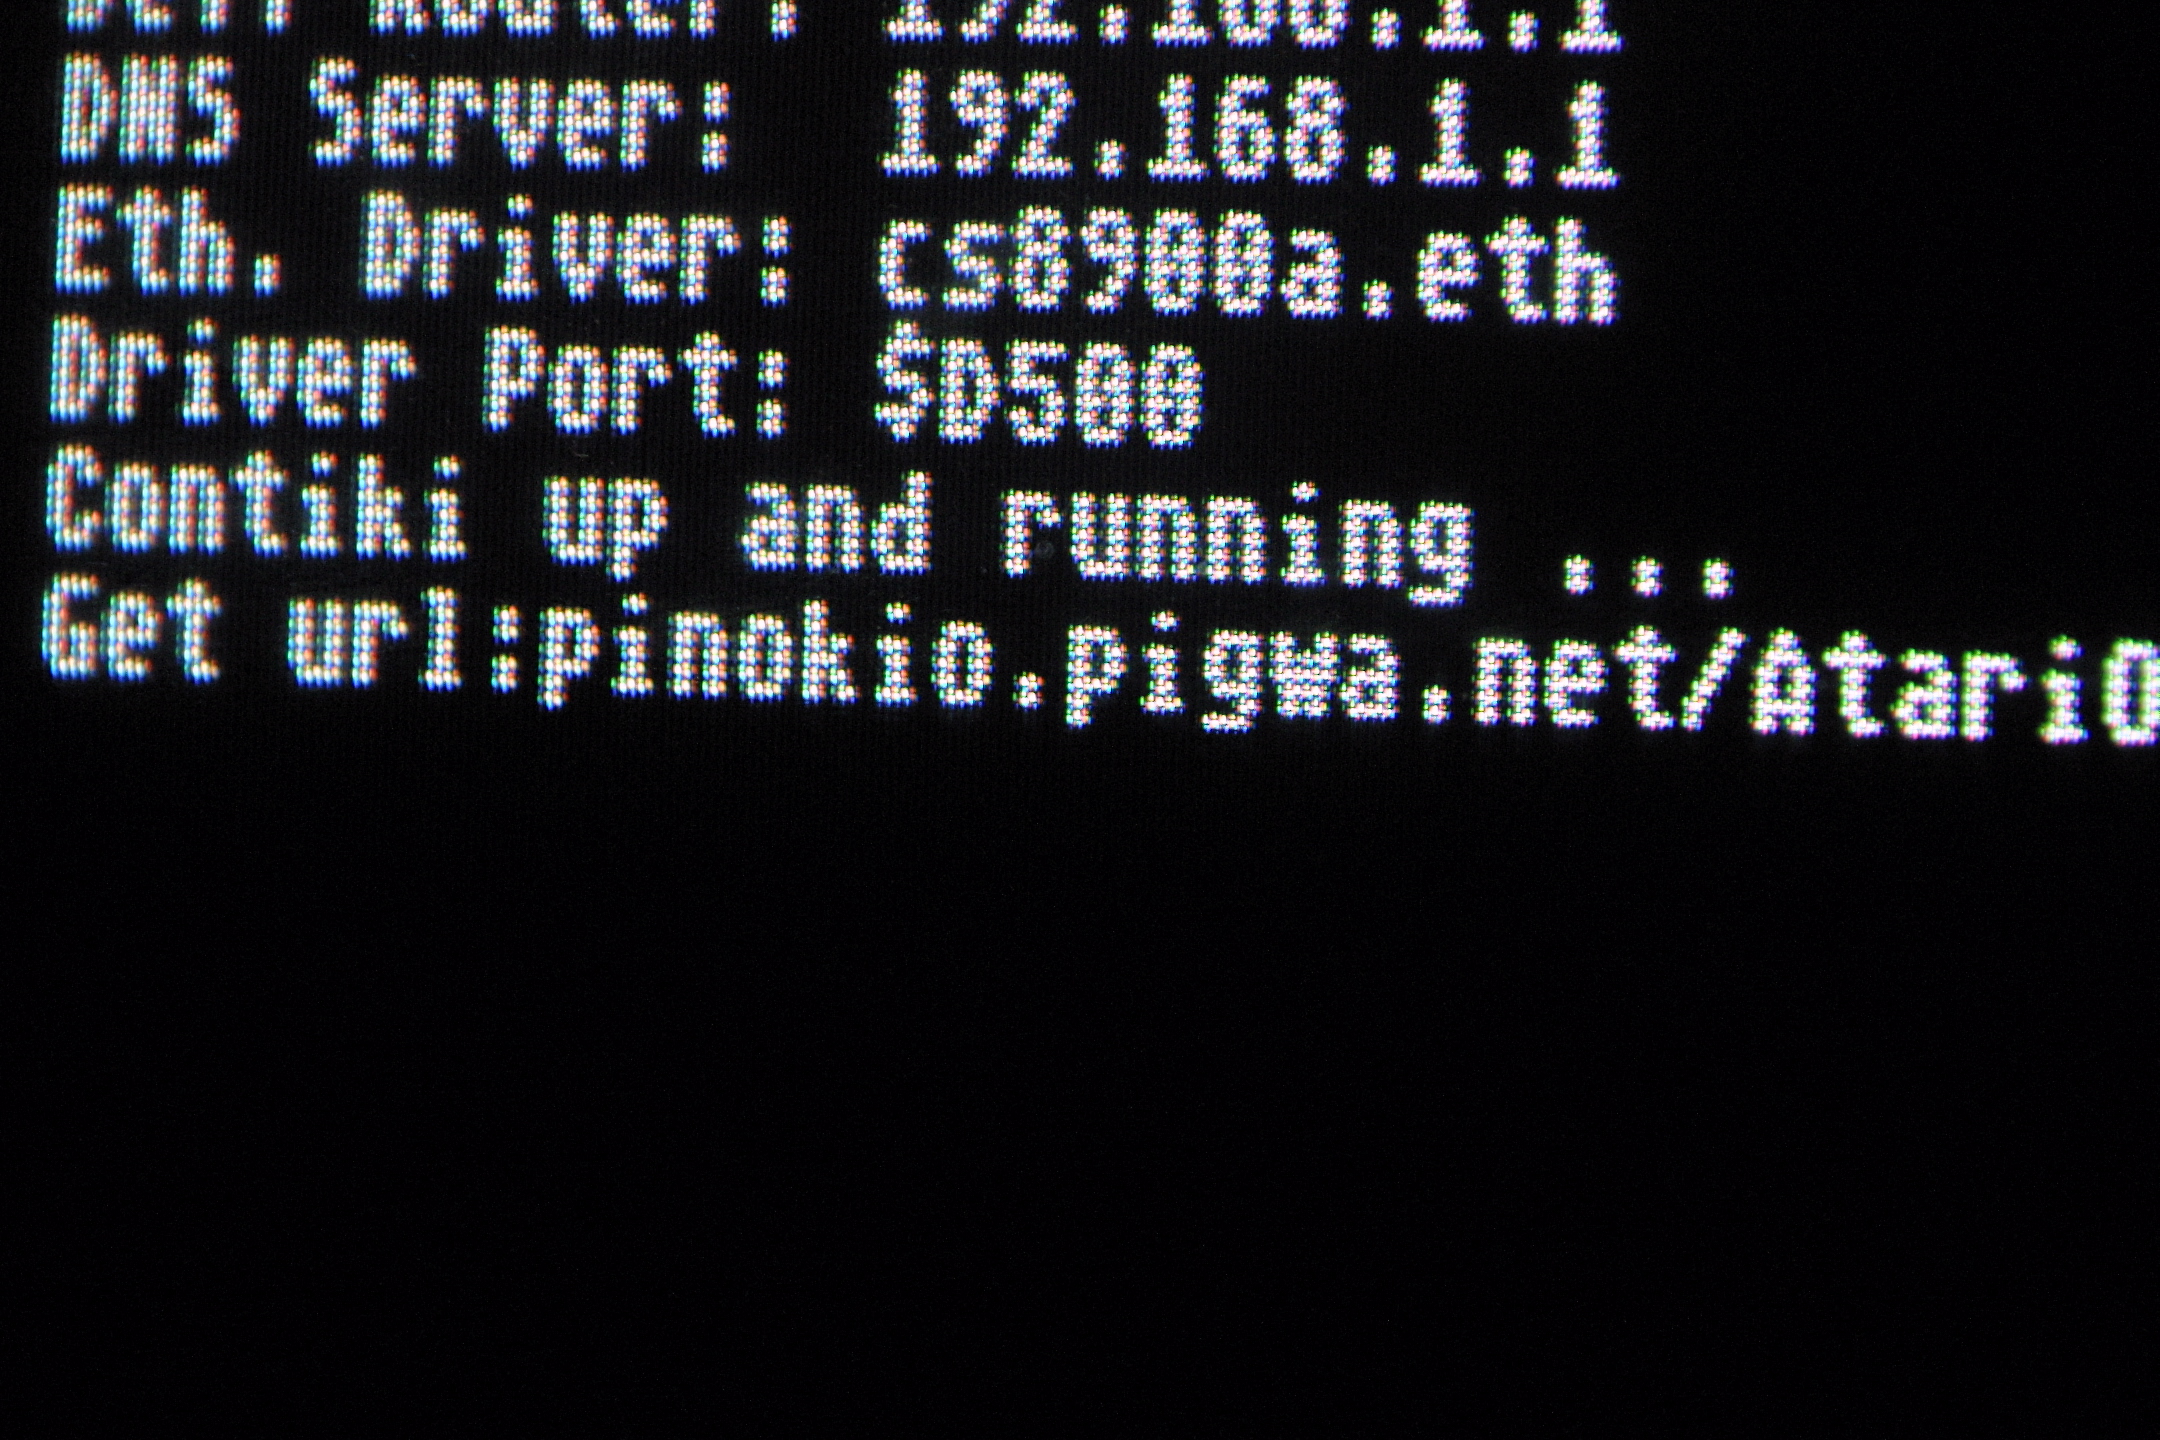 http://www.pinokio.pigwa.net/AtariORG/11.JPG